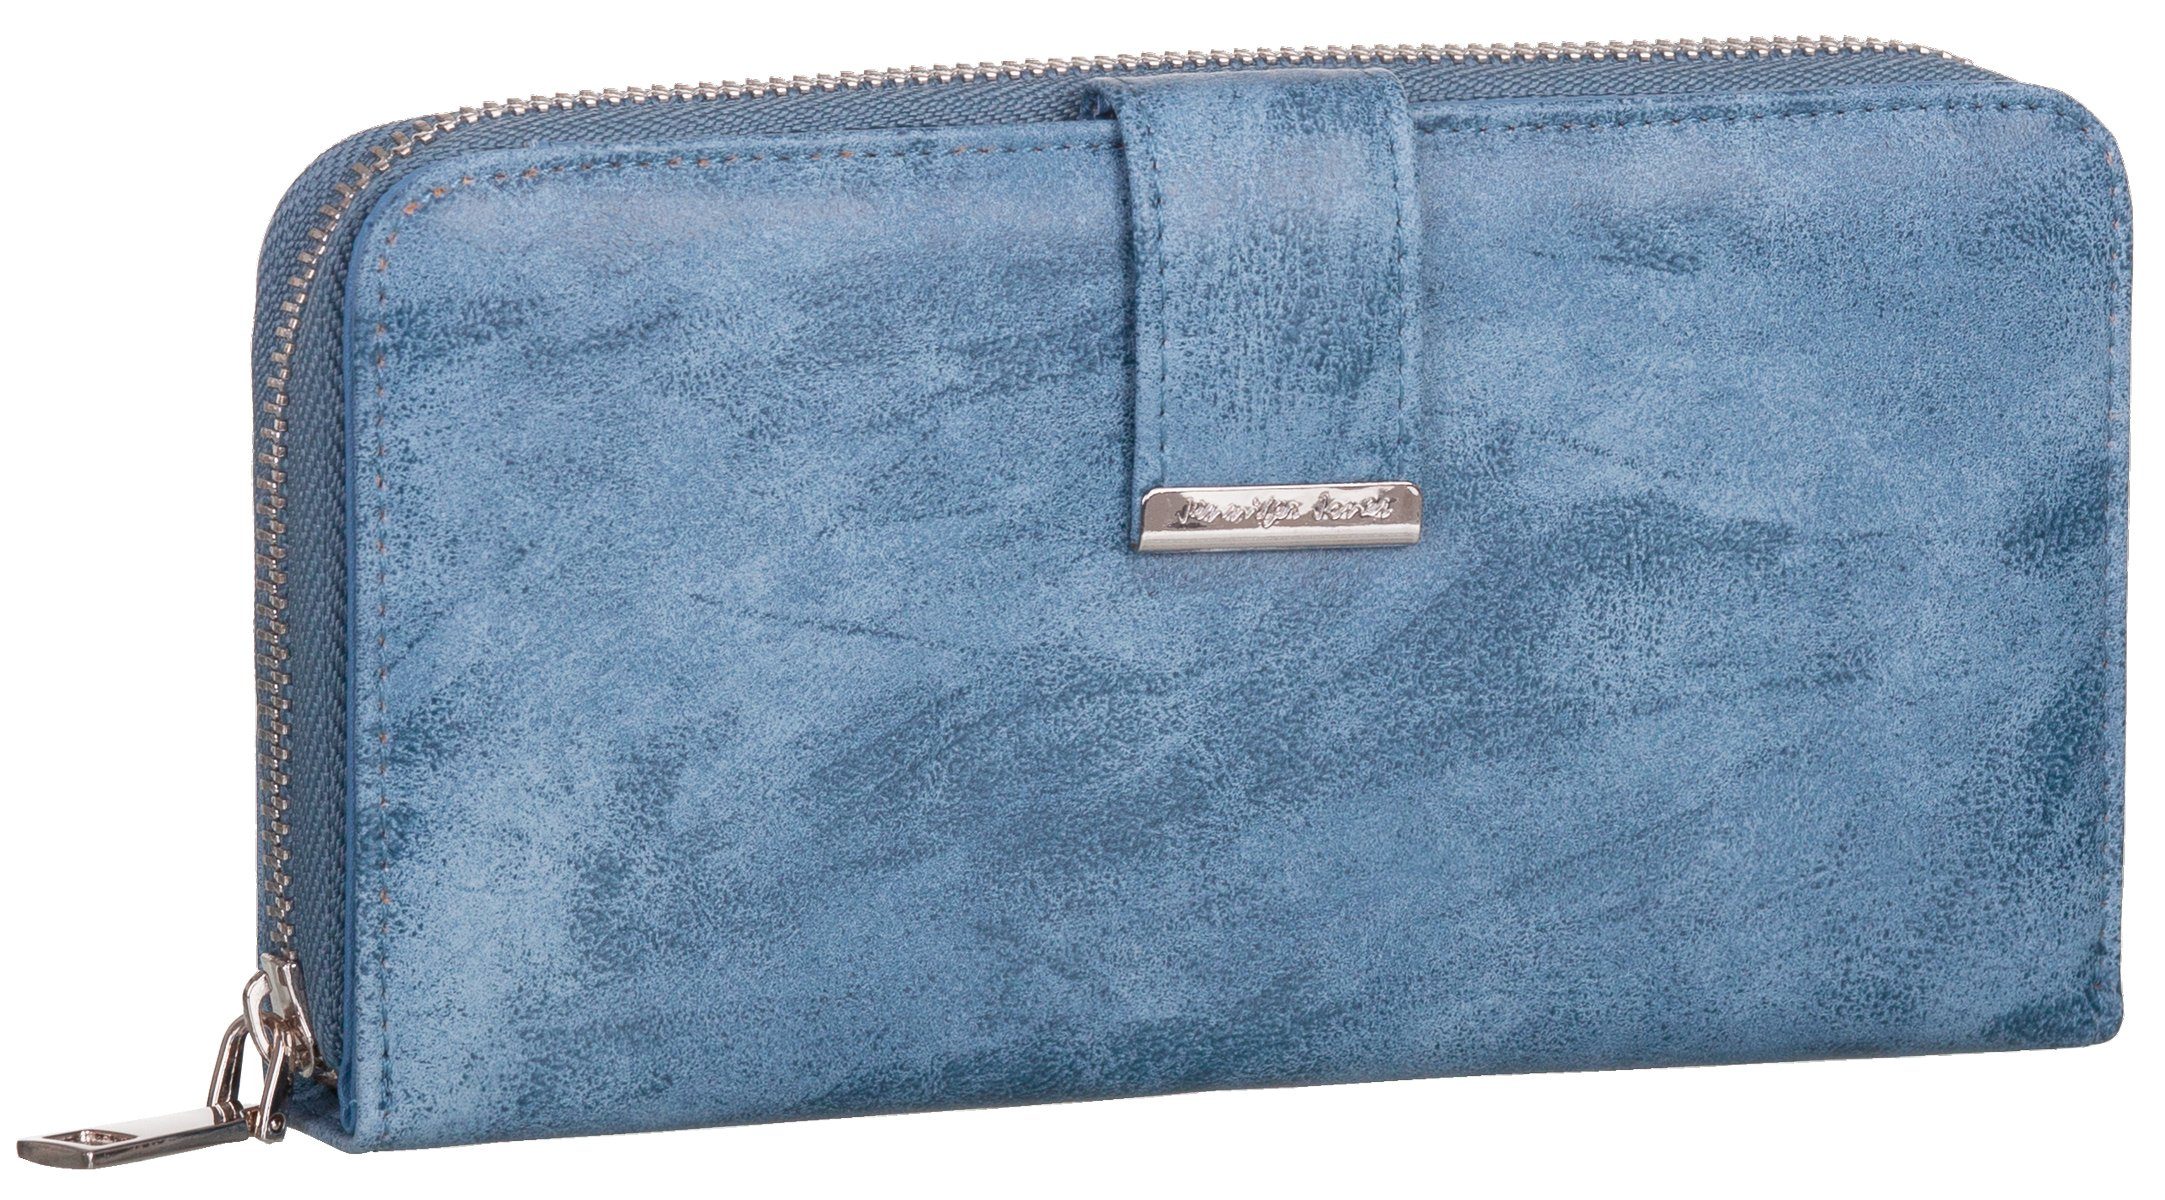 Jennifer Jones Geldbörse, Damen Geldbörse klappbar mit Reißverschluss Portemonnaie Geldbeutel jeansblau